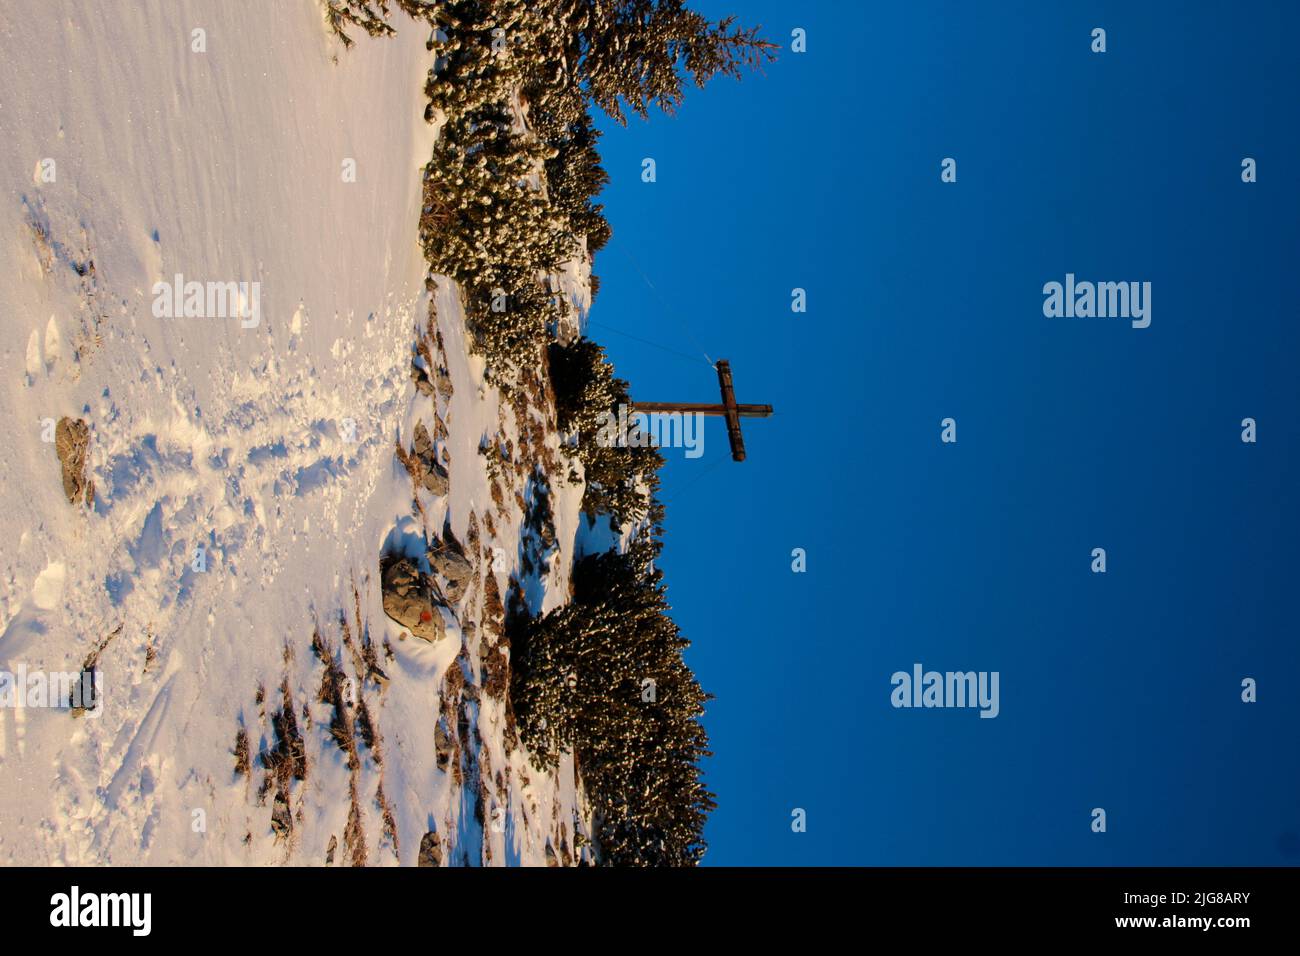 Randonnée d'hiver, ski à Simetsberg. Allemagne, Bavière, Walchensee, Einsiedl, croix de sommet à 1840m, pistes dans la neige Banque D'Images